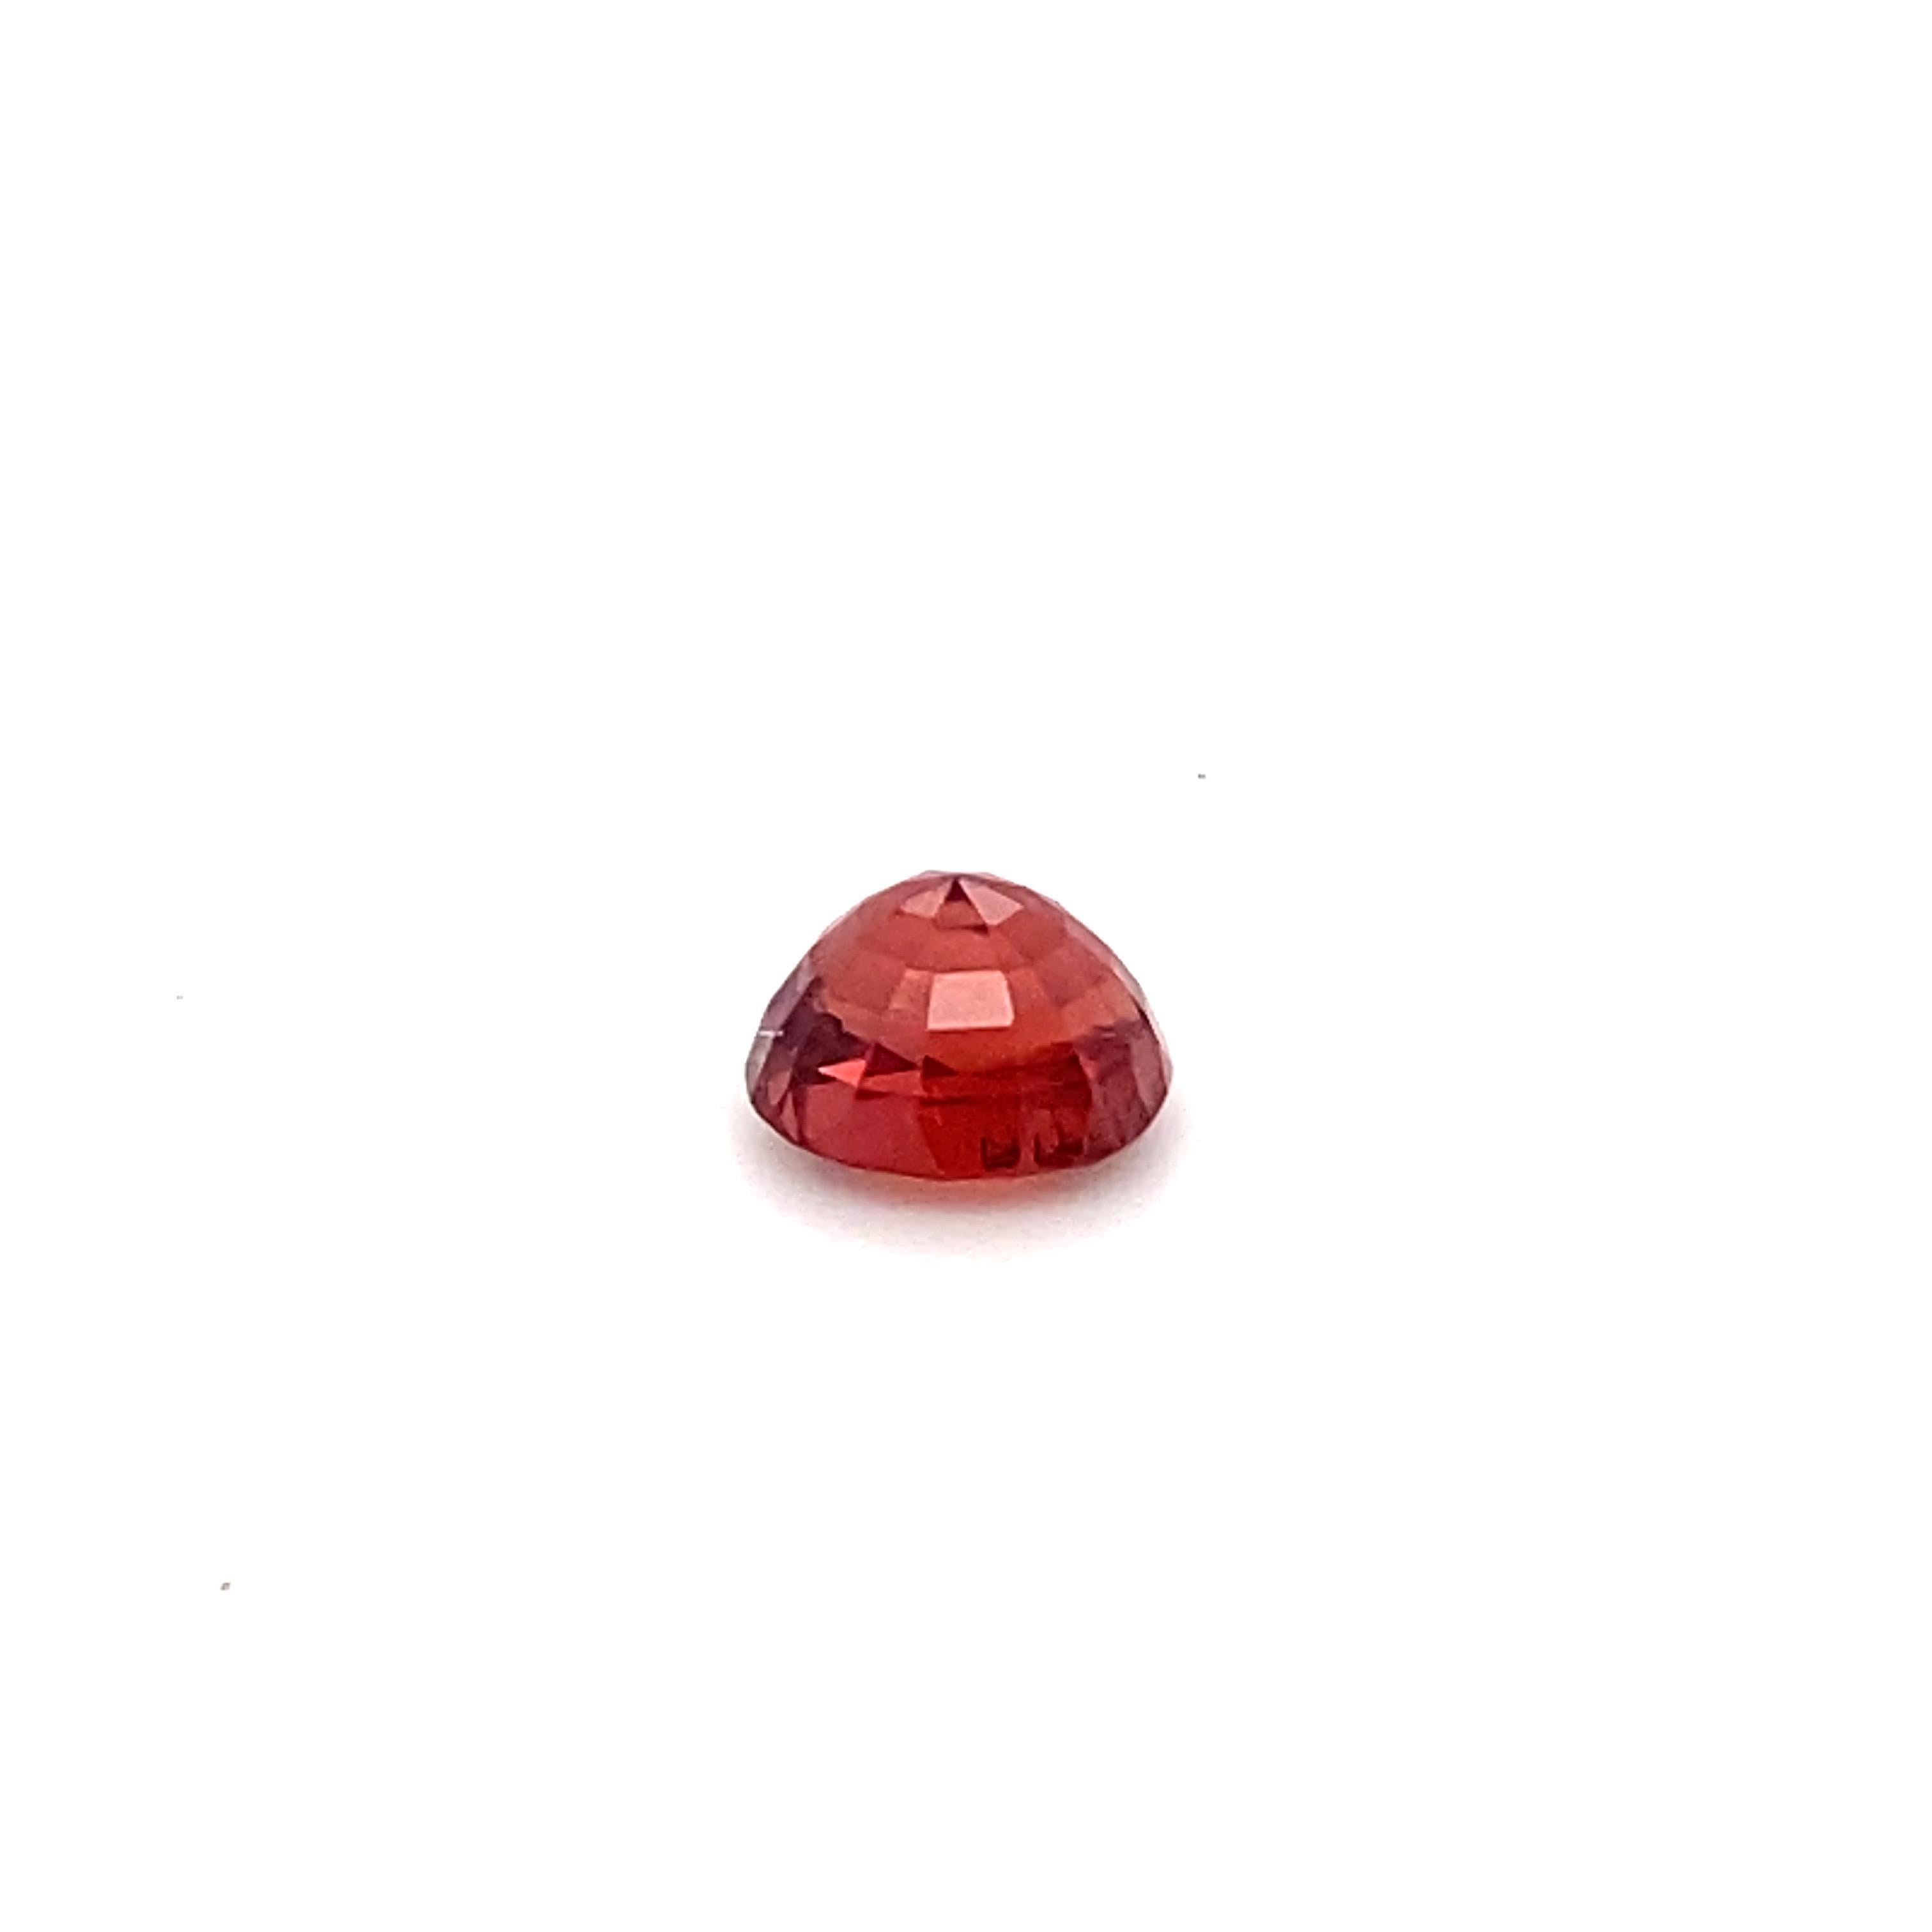 2.10 Carat Oval Shape Natural Red Spinel Loose Gemstone For Sale 14